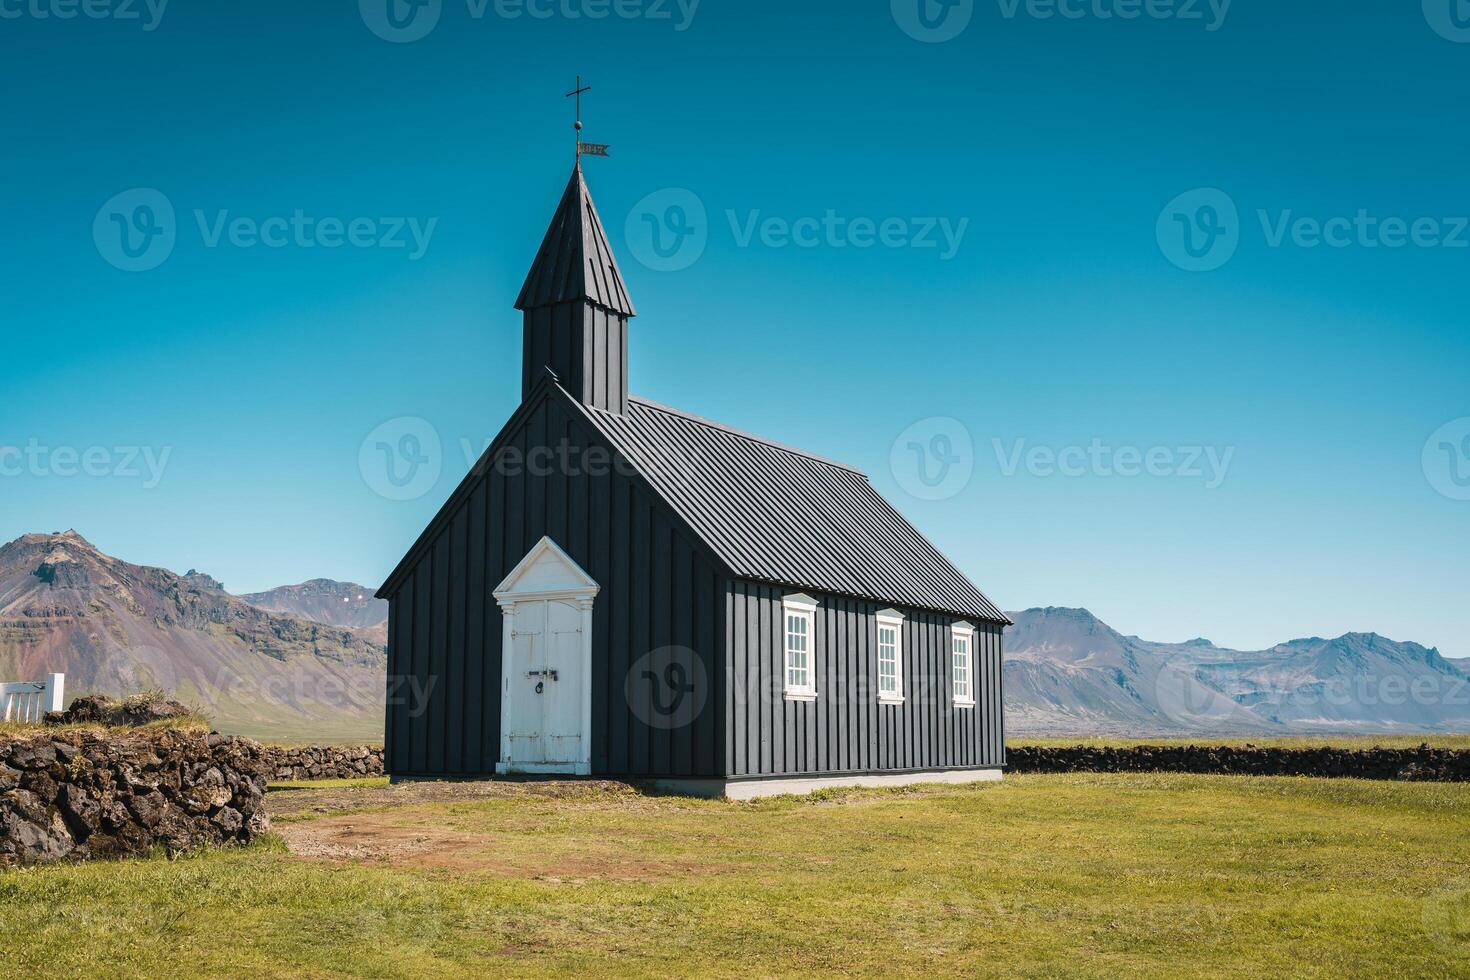 budakirkja ist das berühmt schwarz Kirche im Sommer- beim Island foto